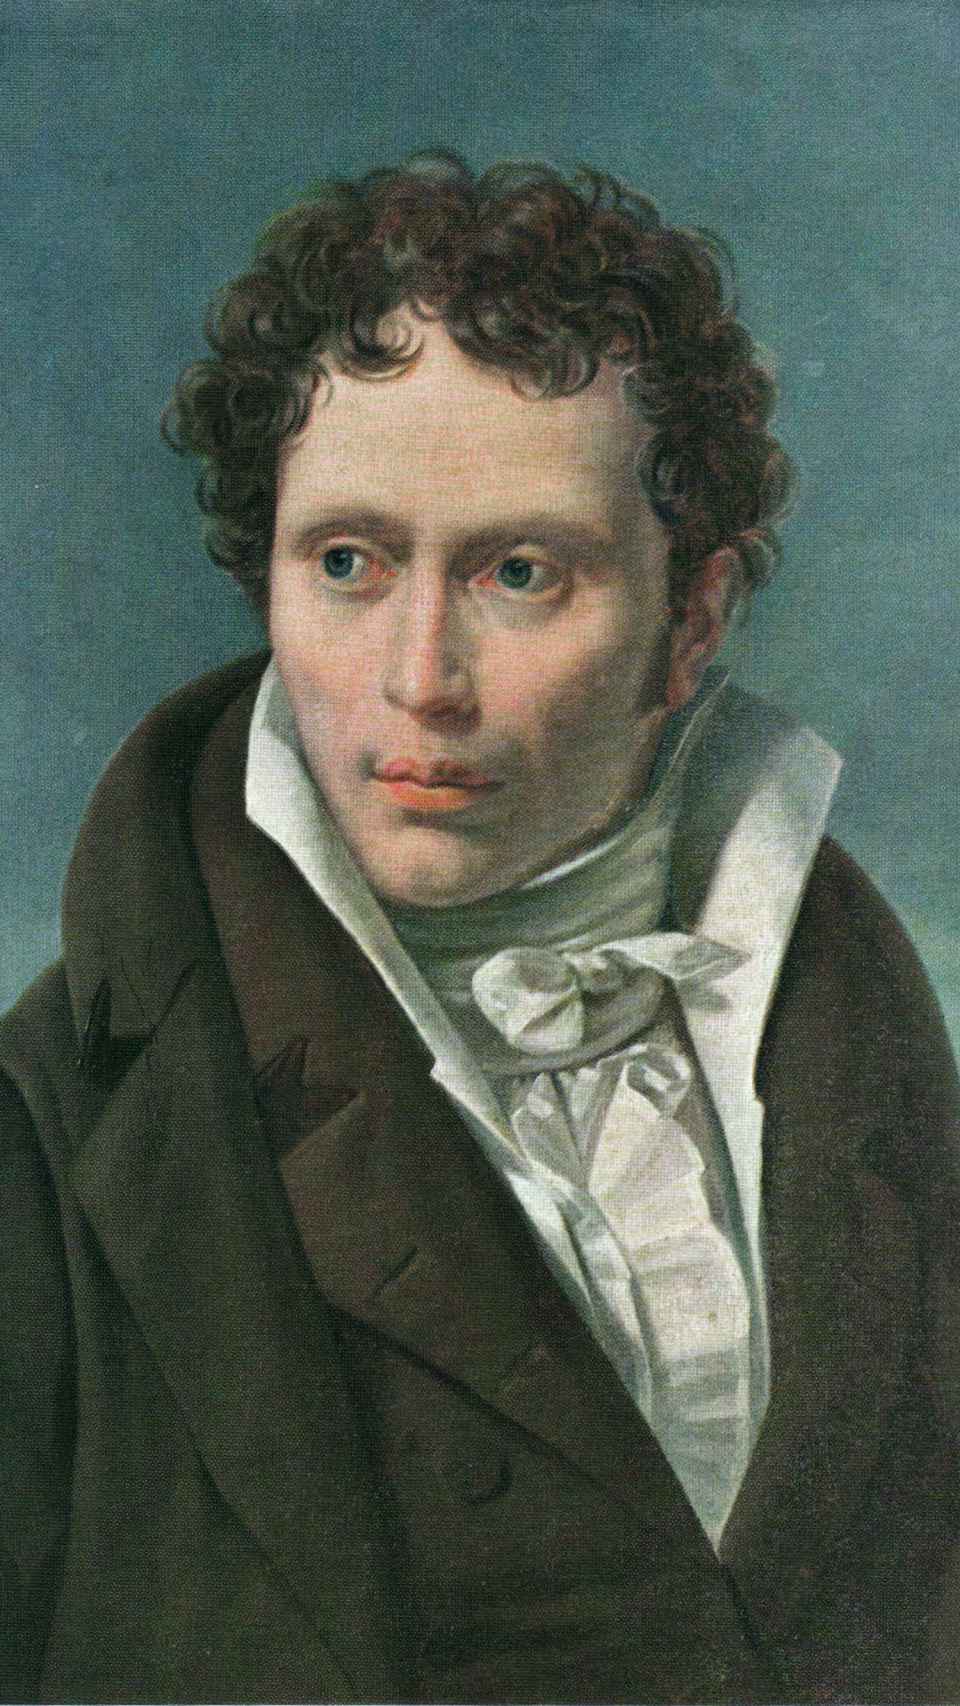 Arthur Schopenhauer retratado por Ludwig SigismundRuhl (1815)